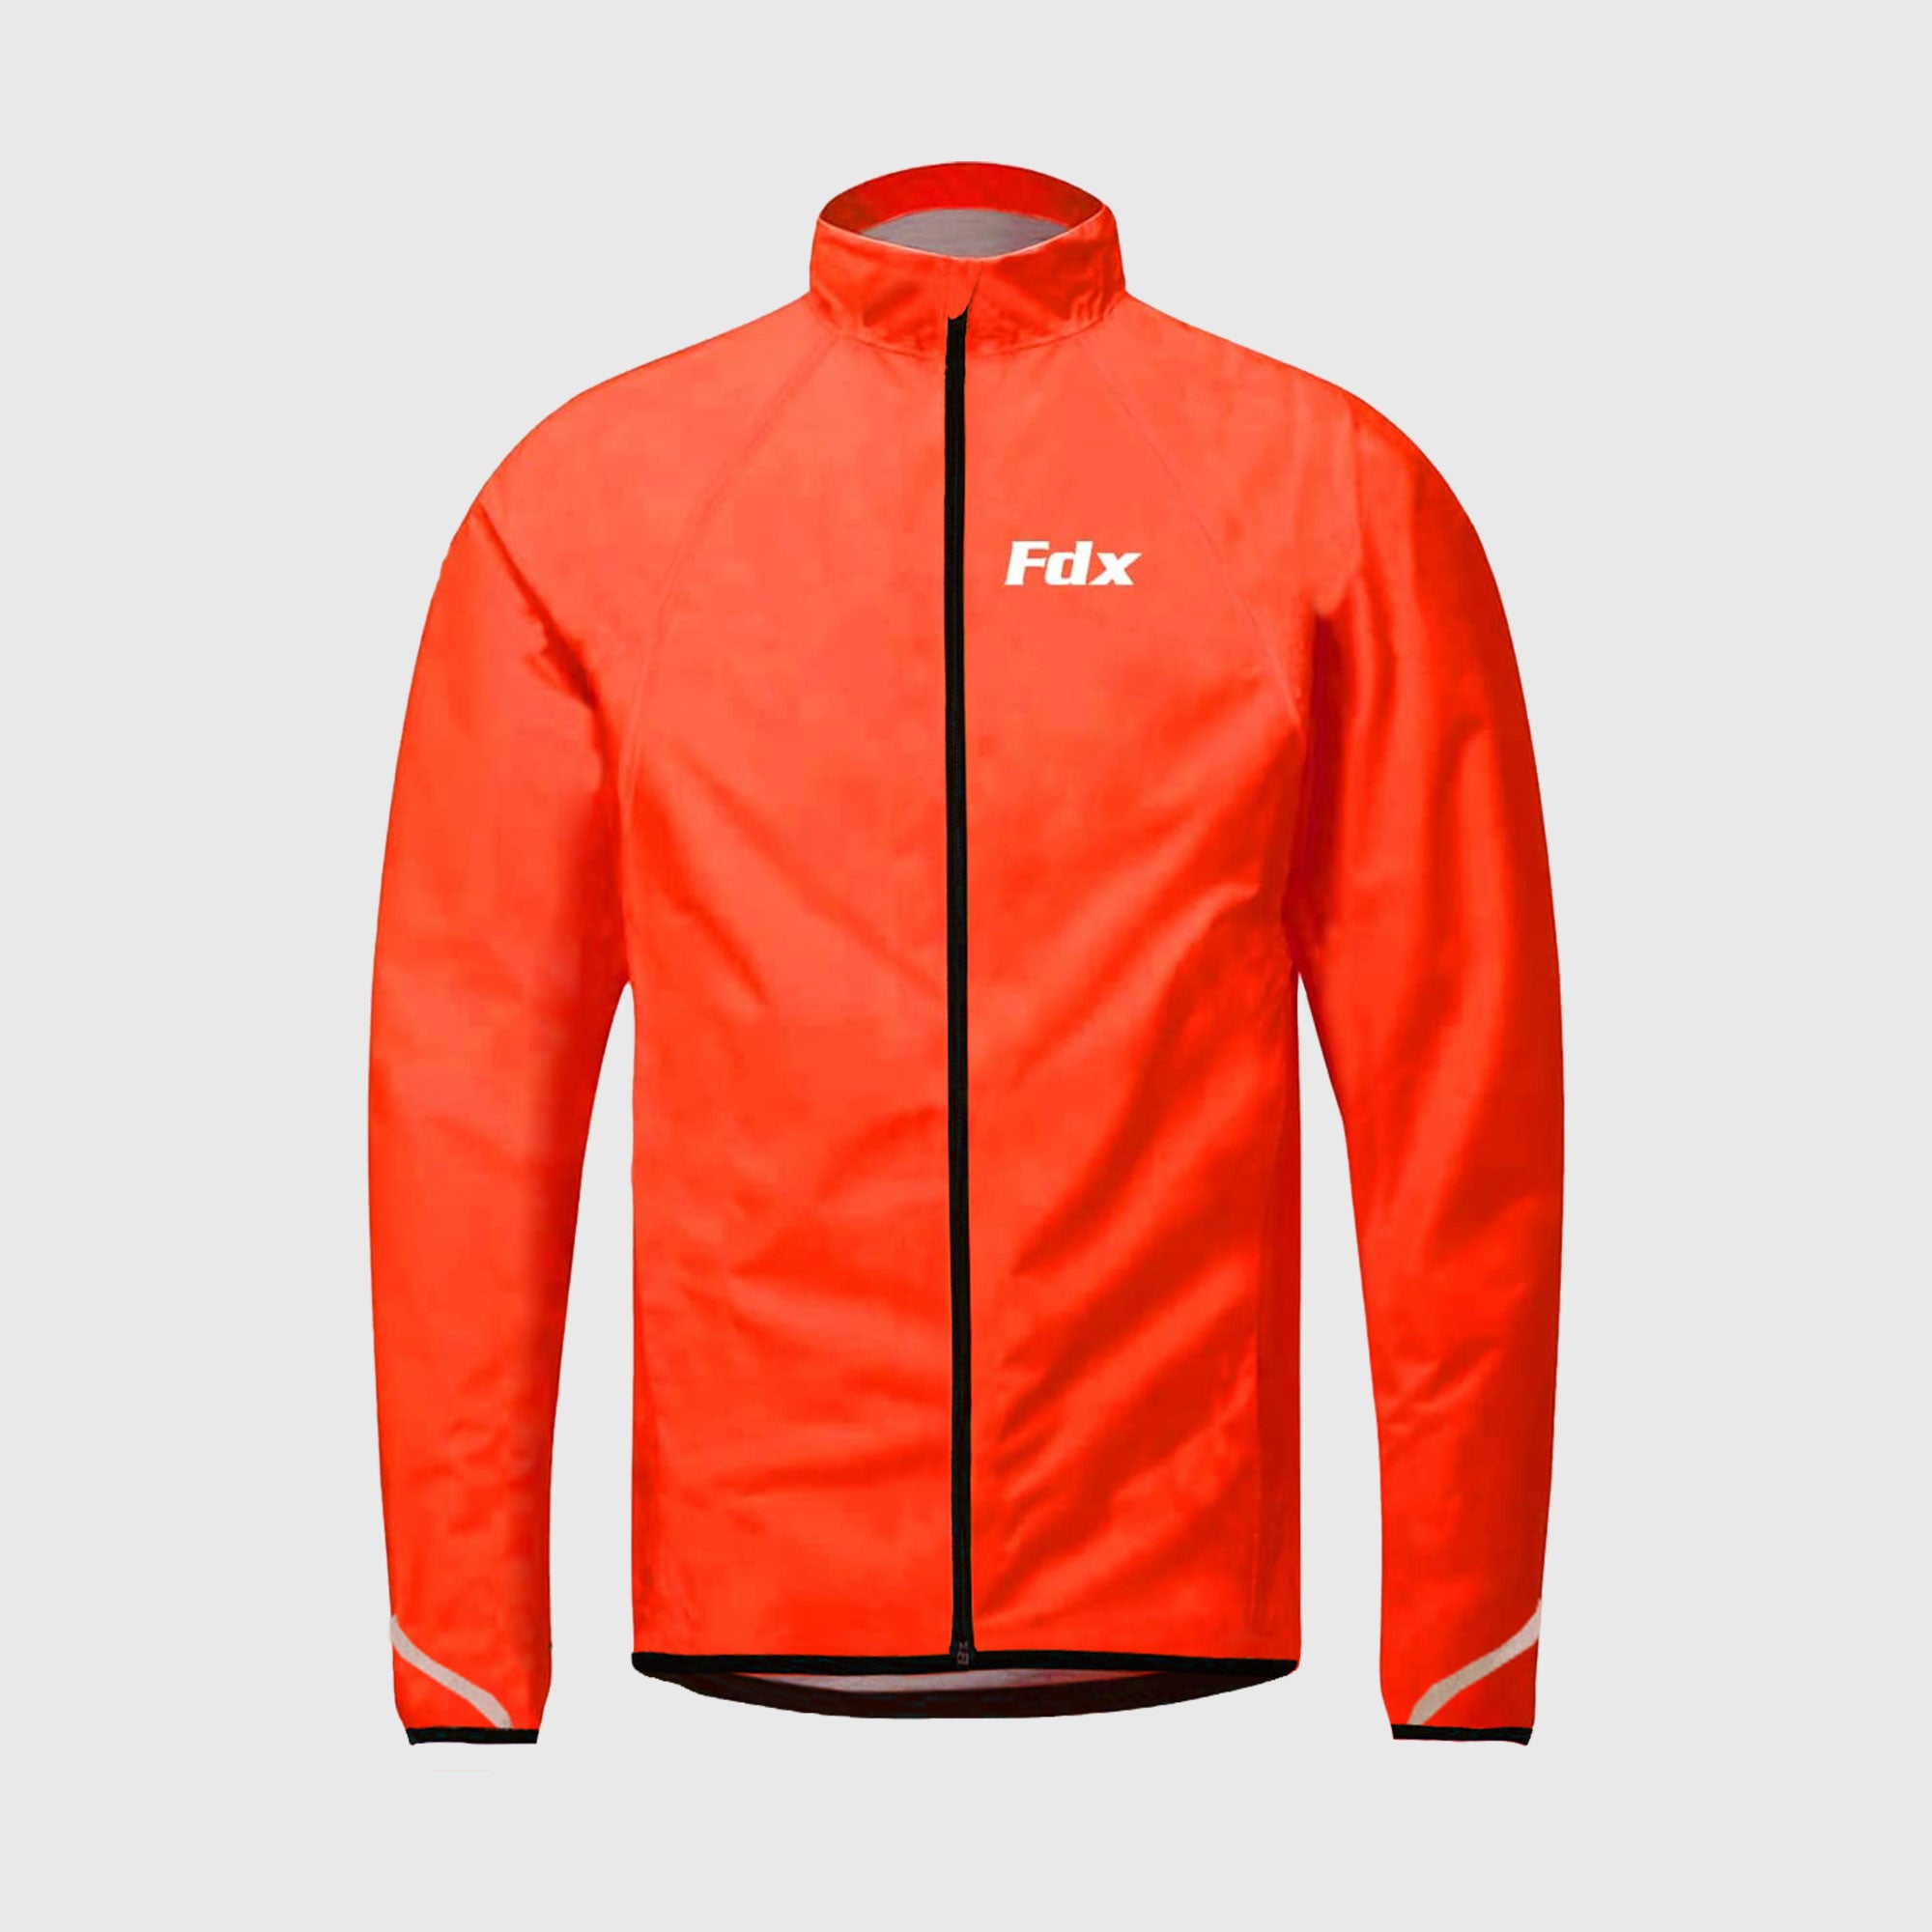 Fdx J20 Red Women's Windproof & Waterproof Cycling Jacket